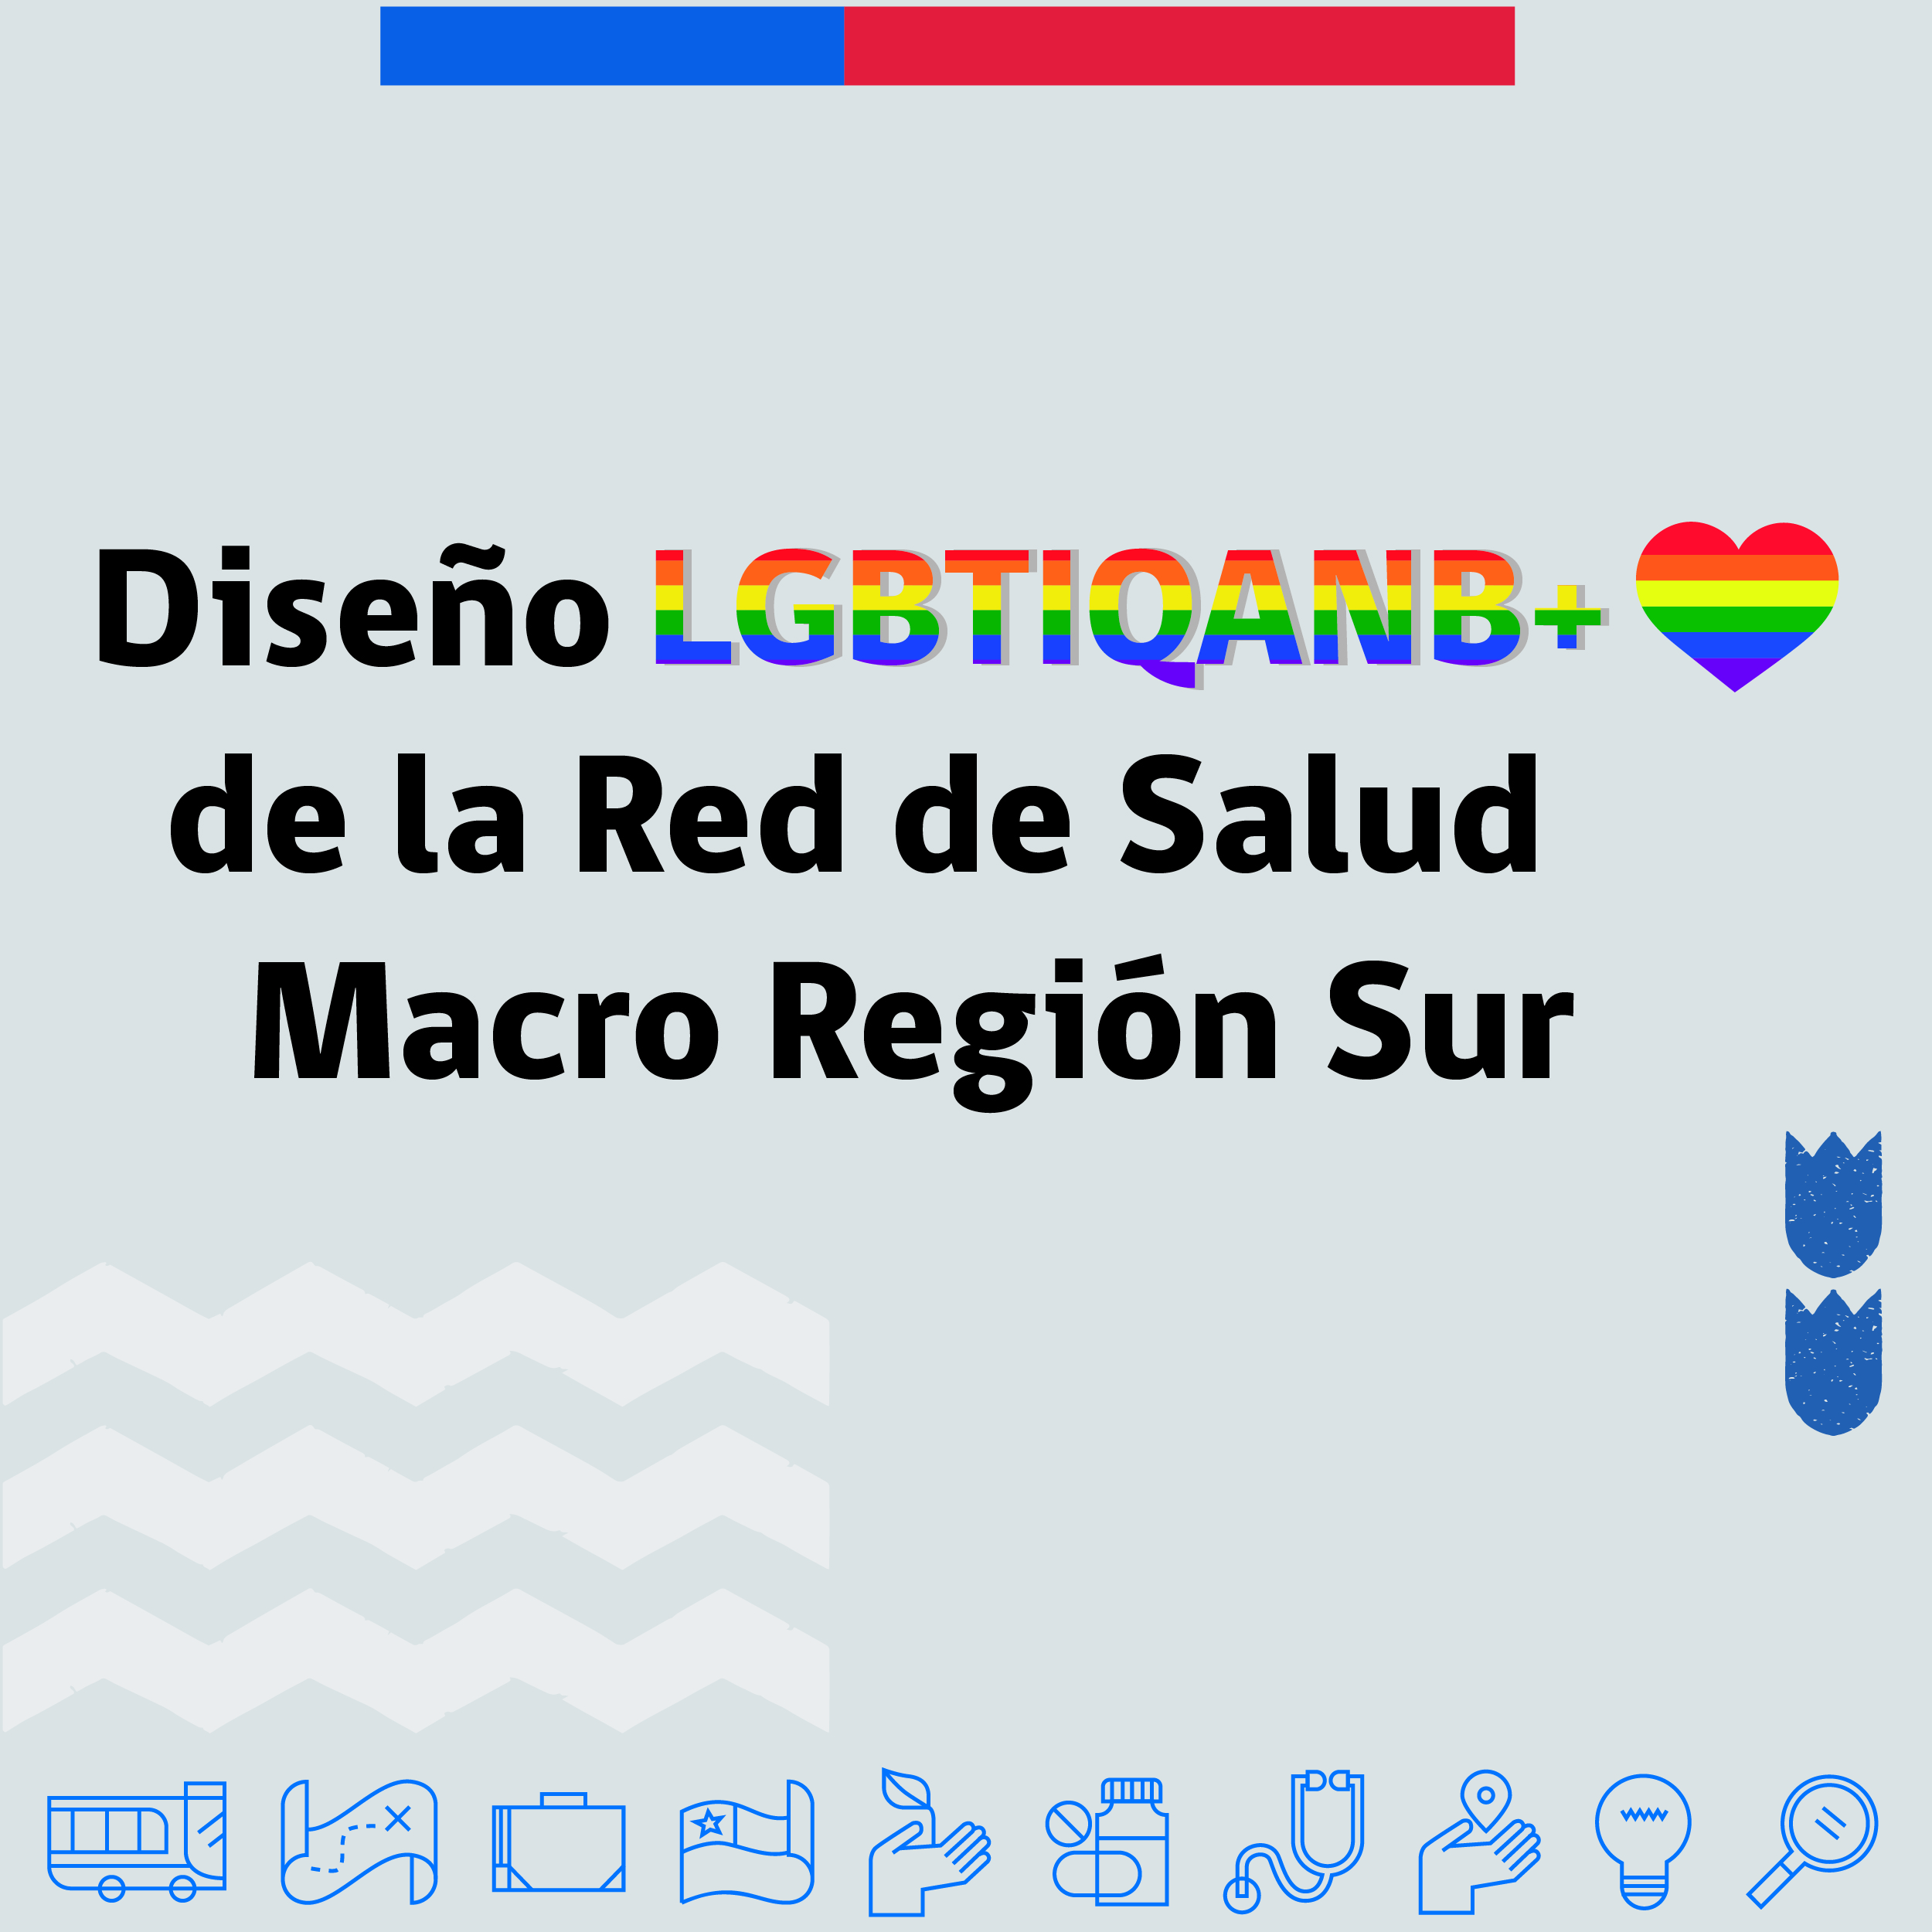 DISEÑO LGBTIQANB+ DE LA RED DE SALUD MACROREGIÓN SUR